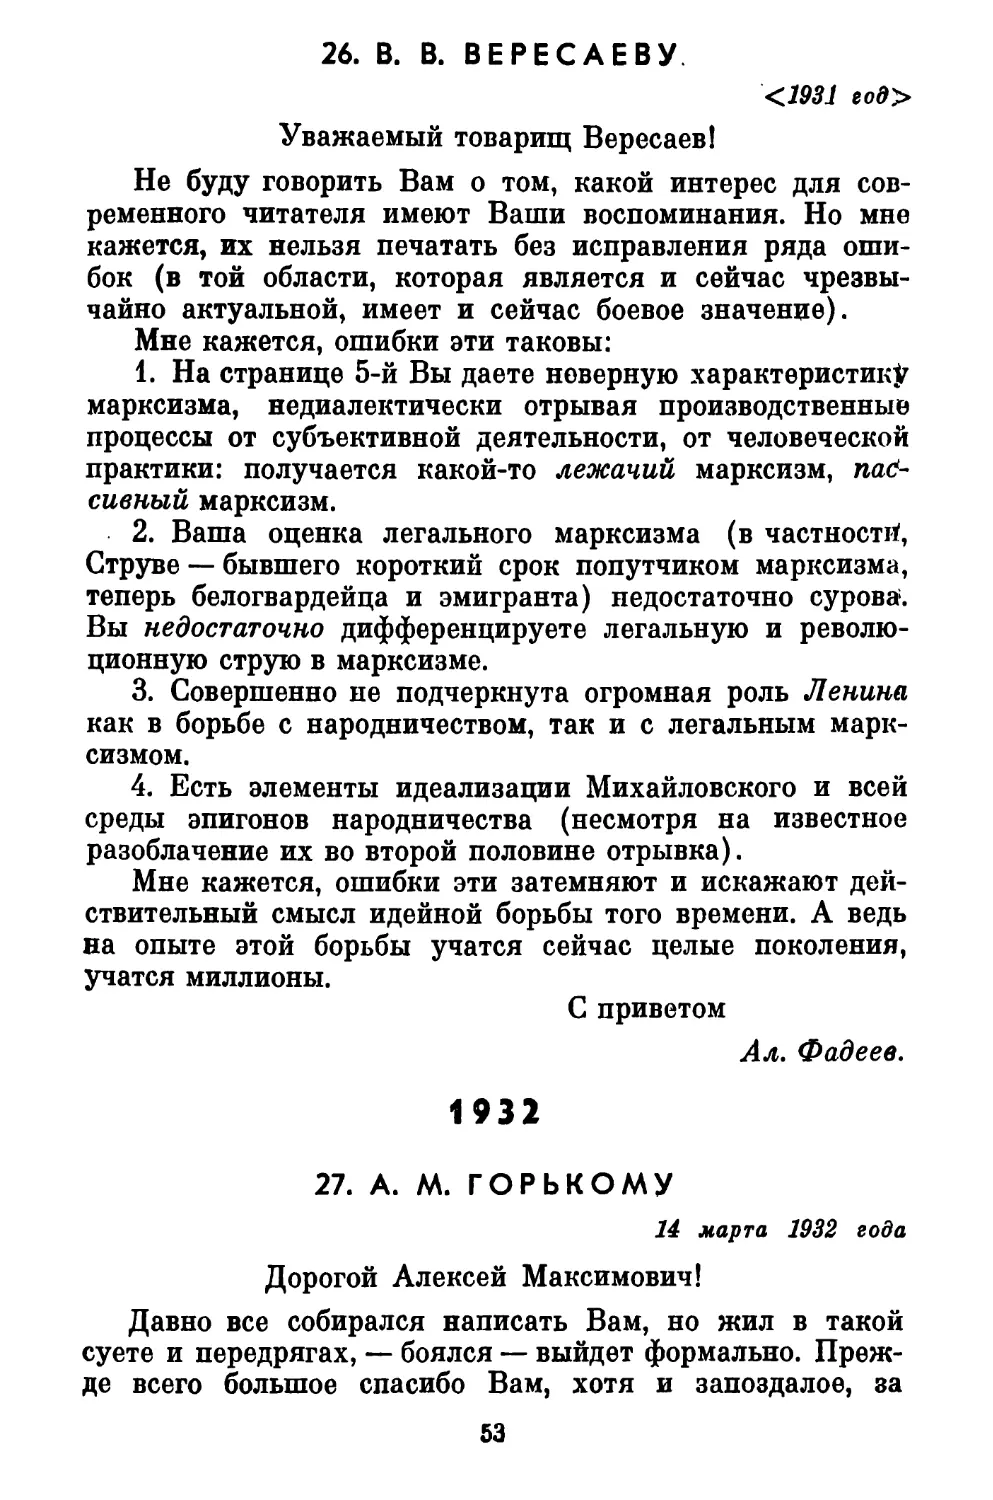 26. В. В. ВЕРЕСАЕВУ
1932